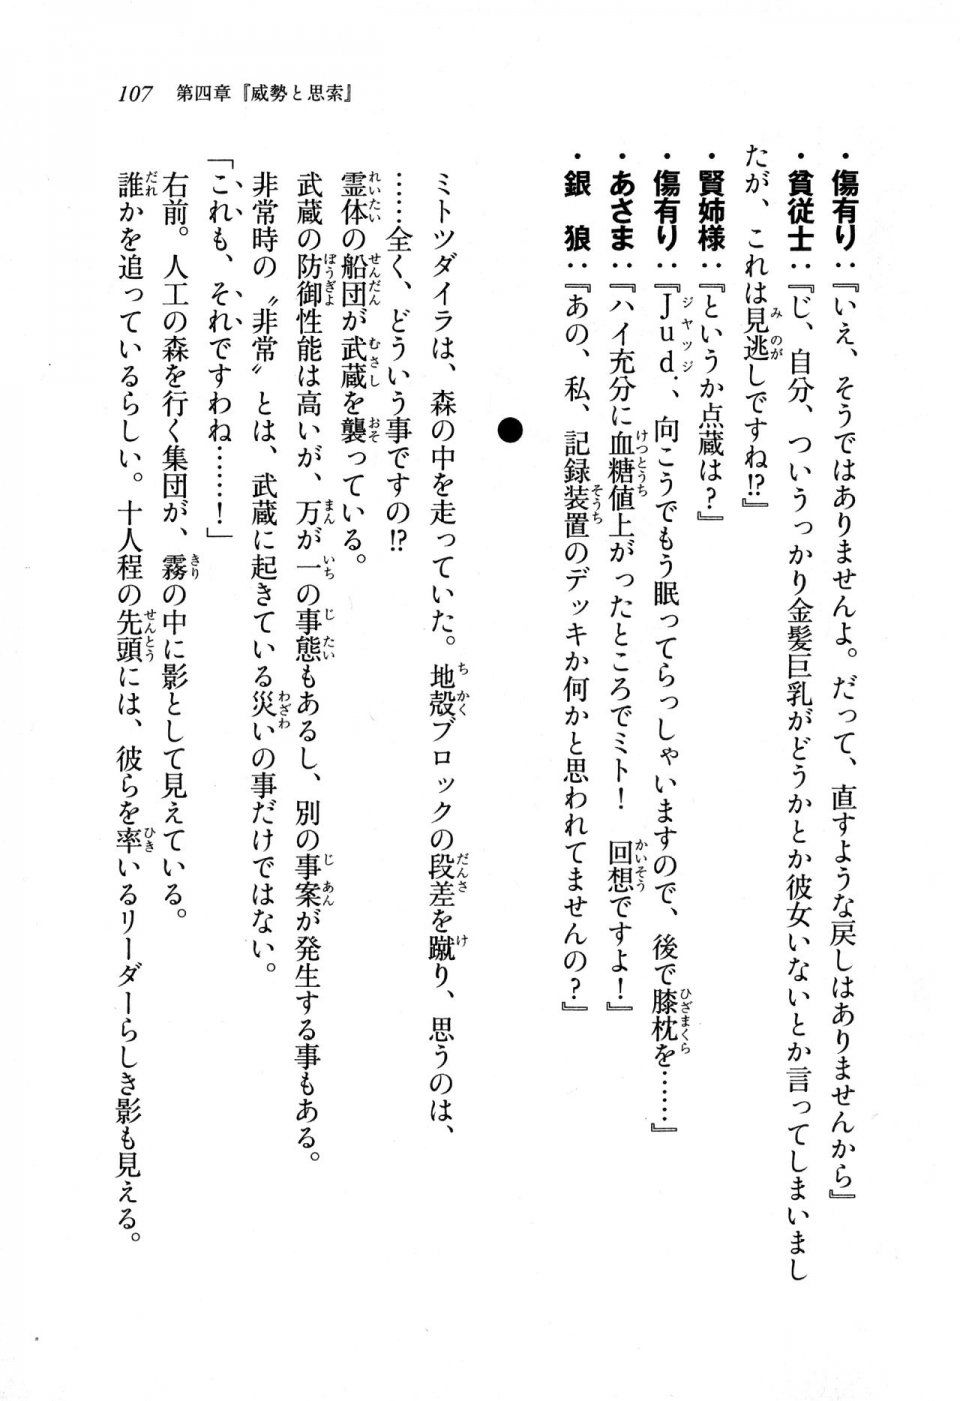 Kyoukai Senjou no Horizon LN Sidestory Vol 1 - Photo #105